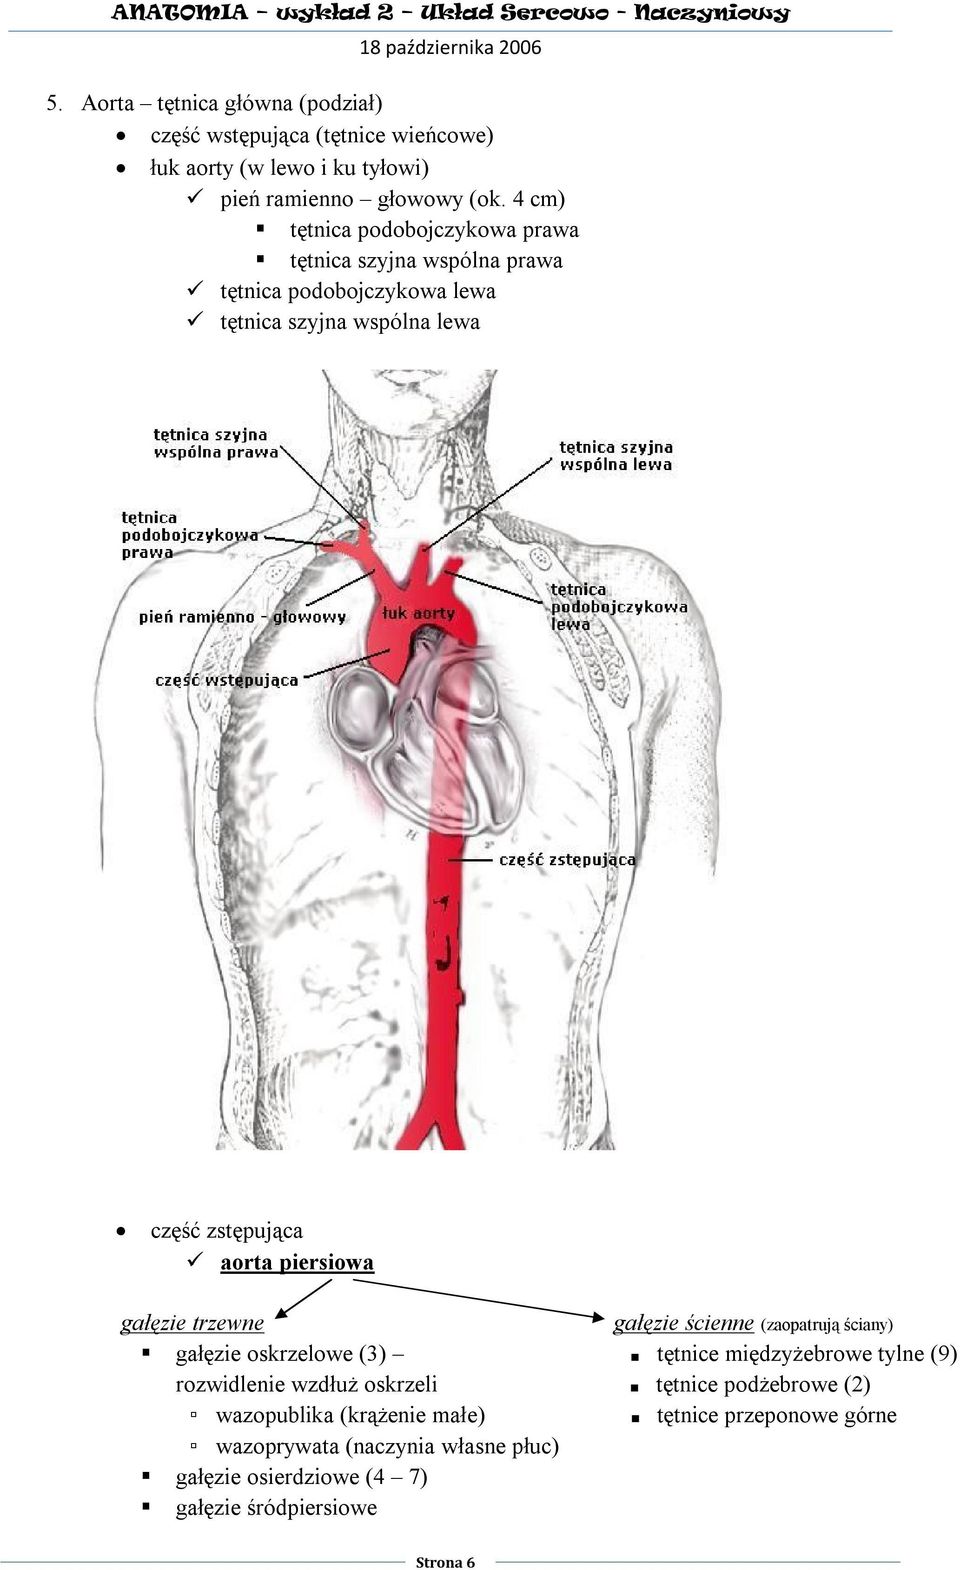 piersiowa gałęzie trzewne gałęzie ścienne (zaopatrują ściany) gałęzie oskrzelowe (3) tętnice międzyżebrowe tylne (9) rozwidlenie wzdłuż oskrzeli